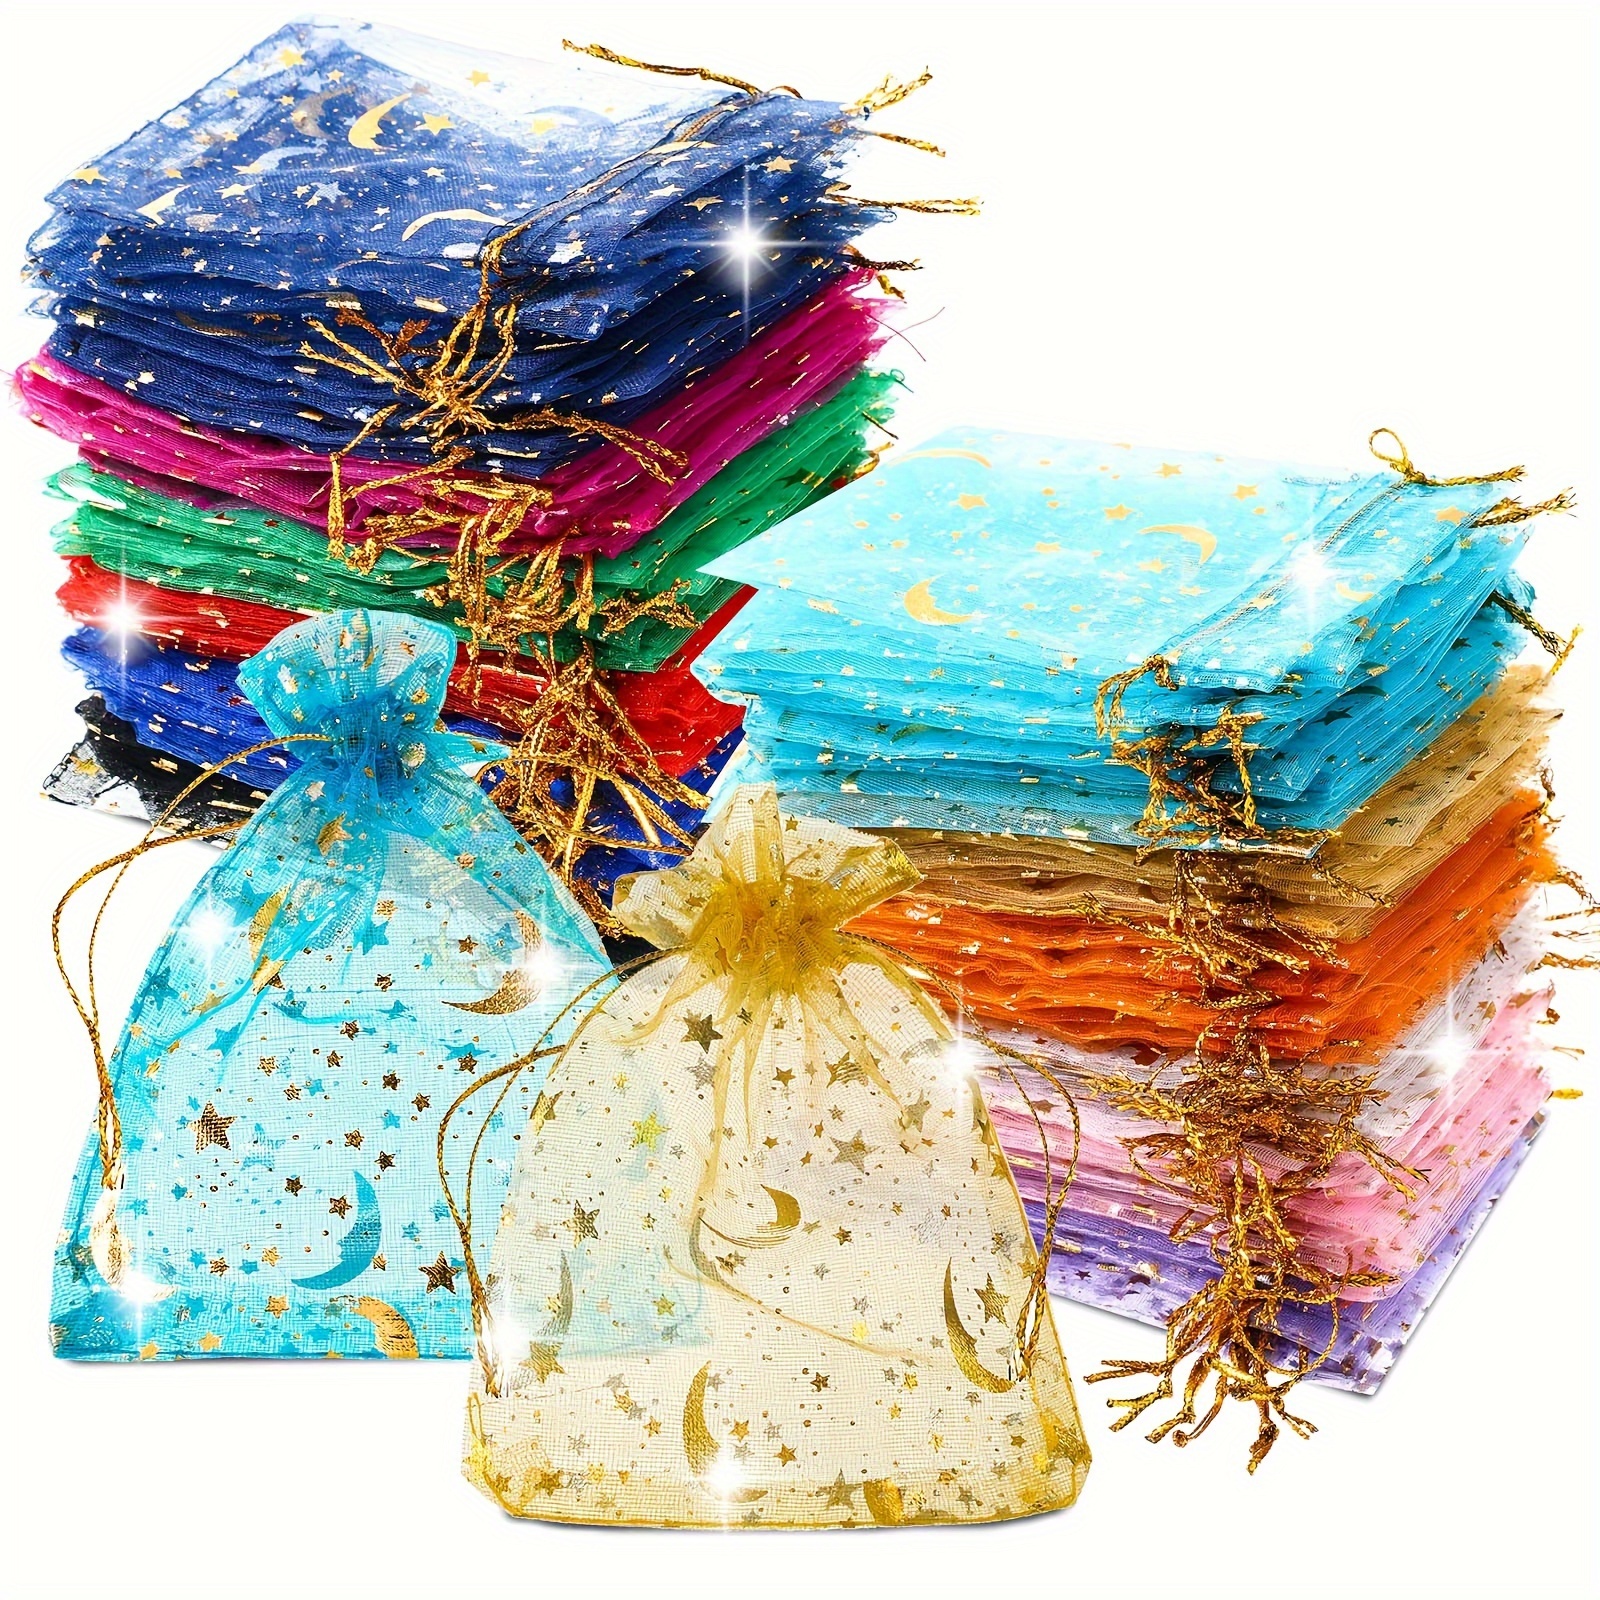 Paquete de 50 bolsas grandes de celofán transparente de 24 x 30 pulgadas,  bolsas de regalo de plástico resistente para regalos, artes, manualidades